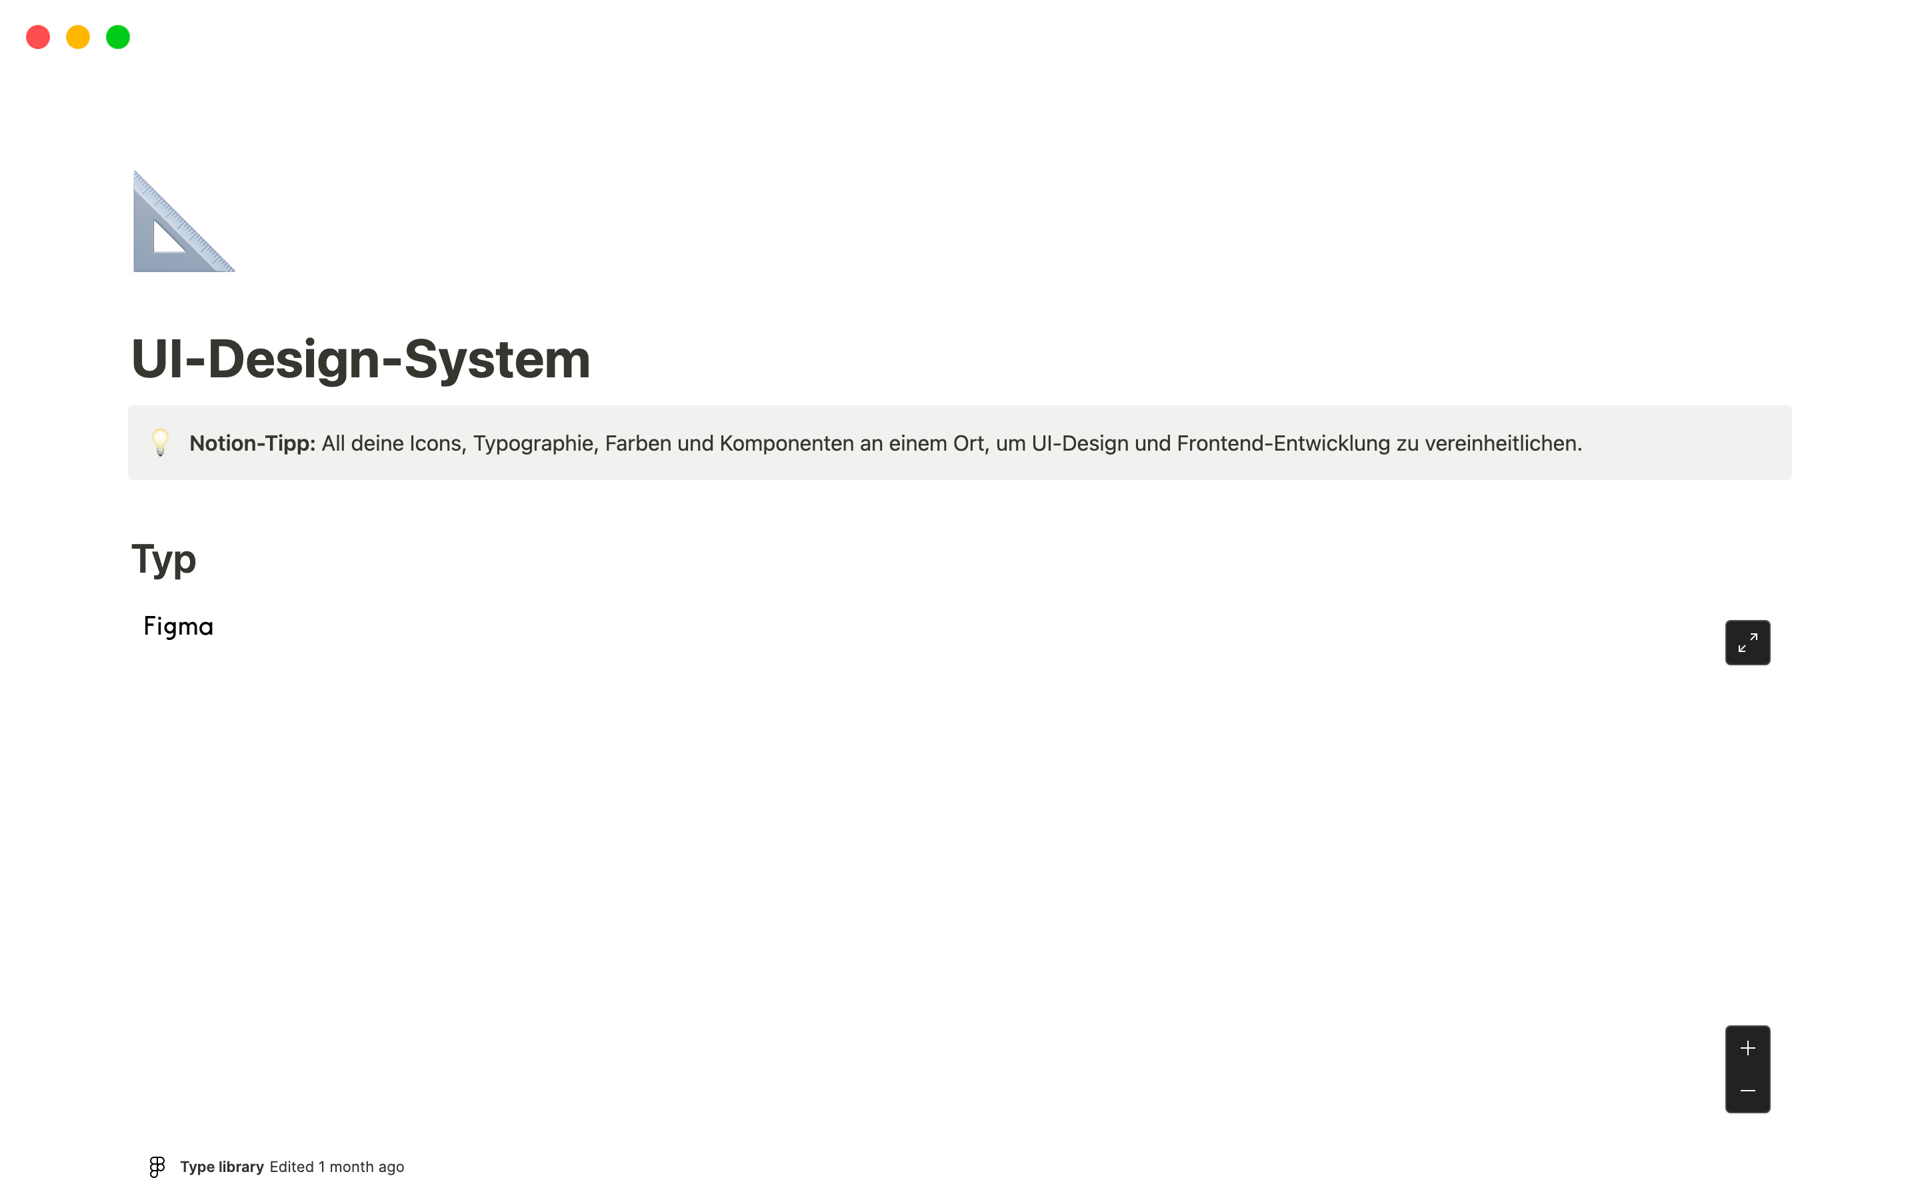 Eine Vorlagenvorschau für UI-Design-System